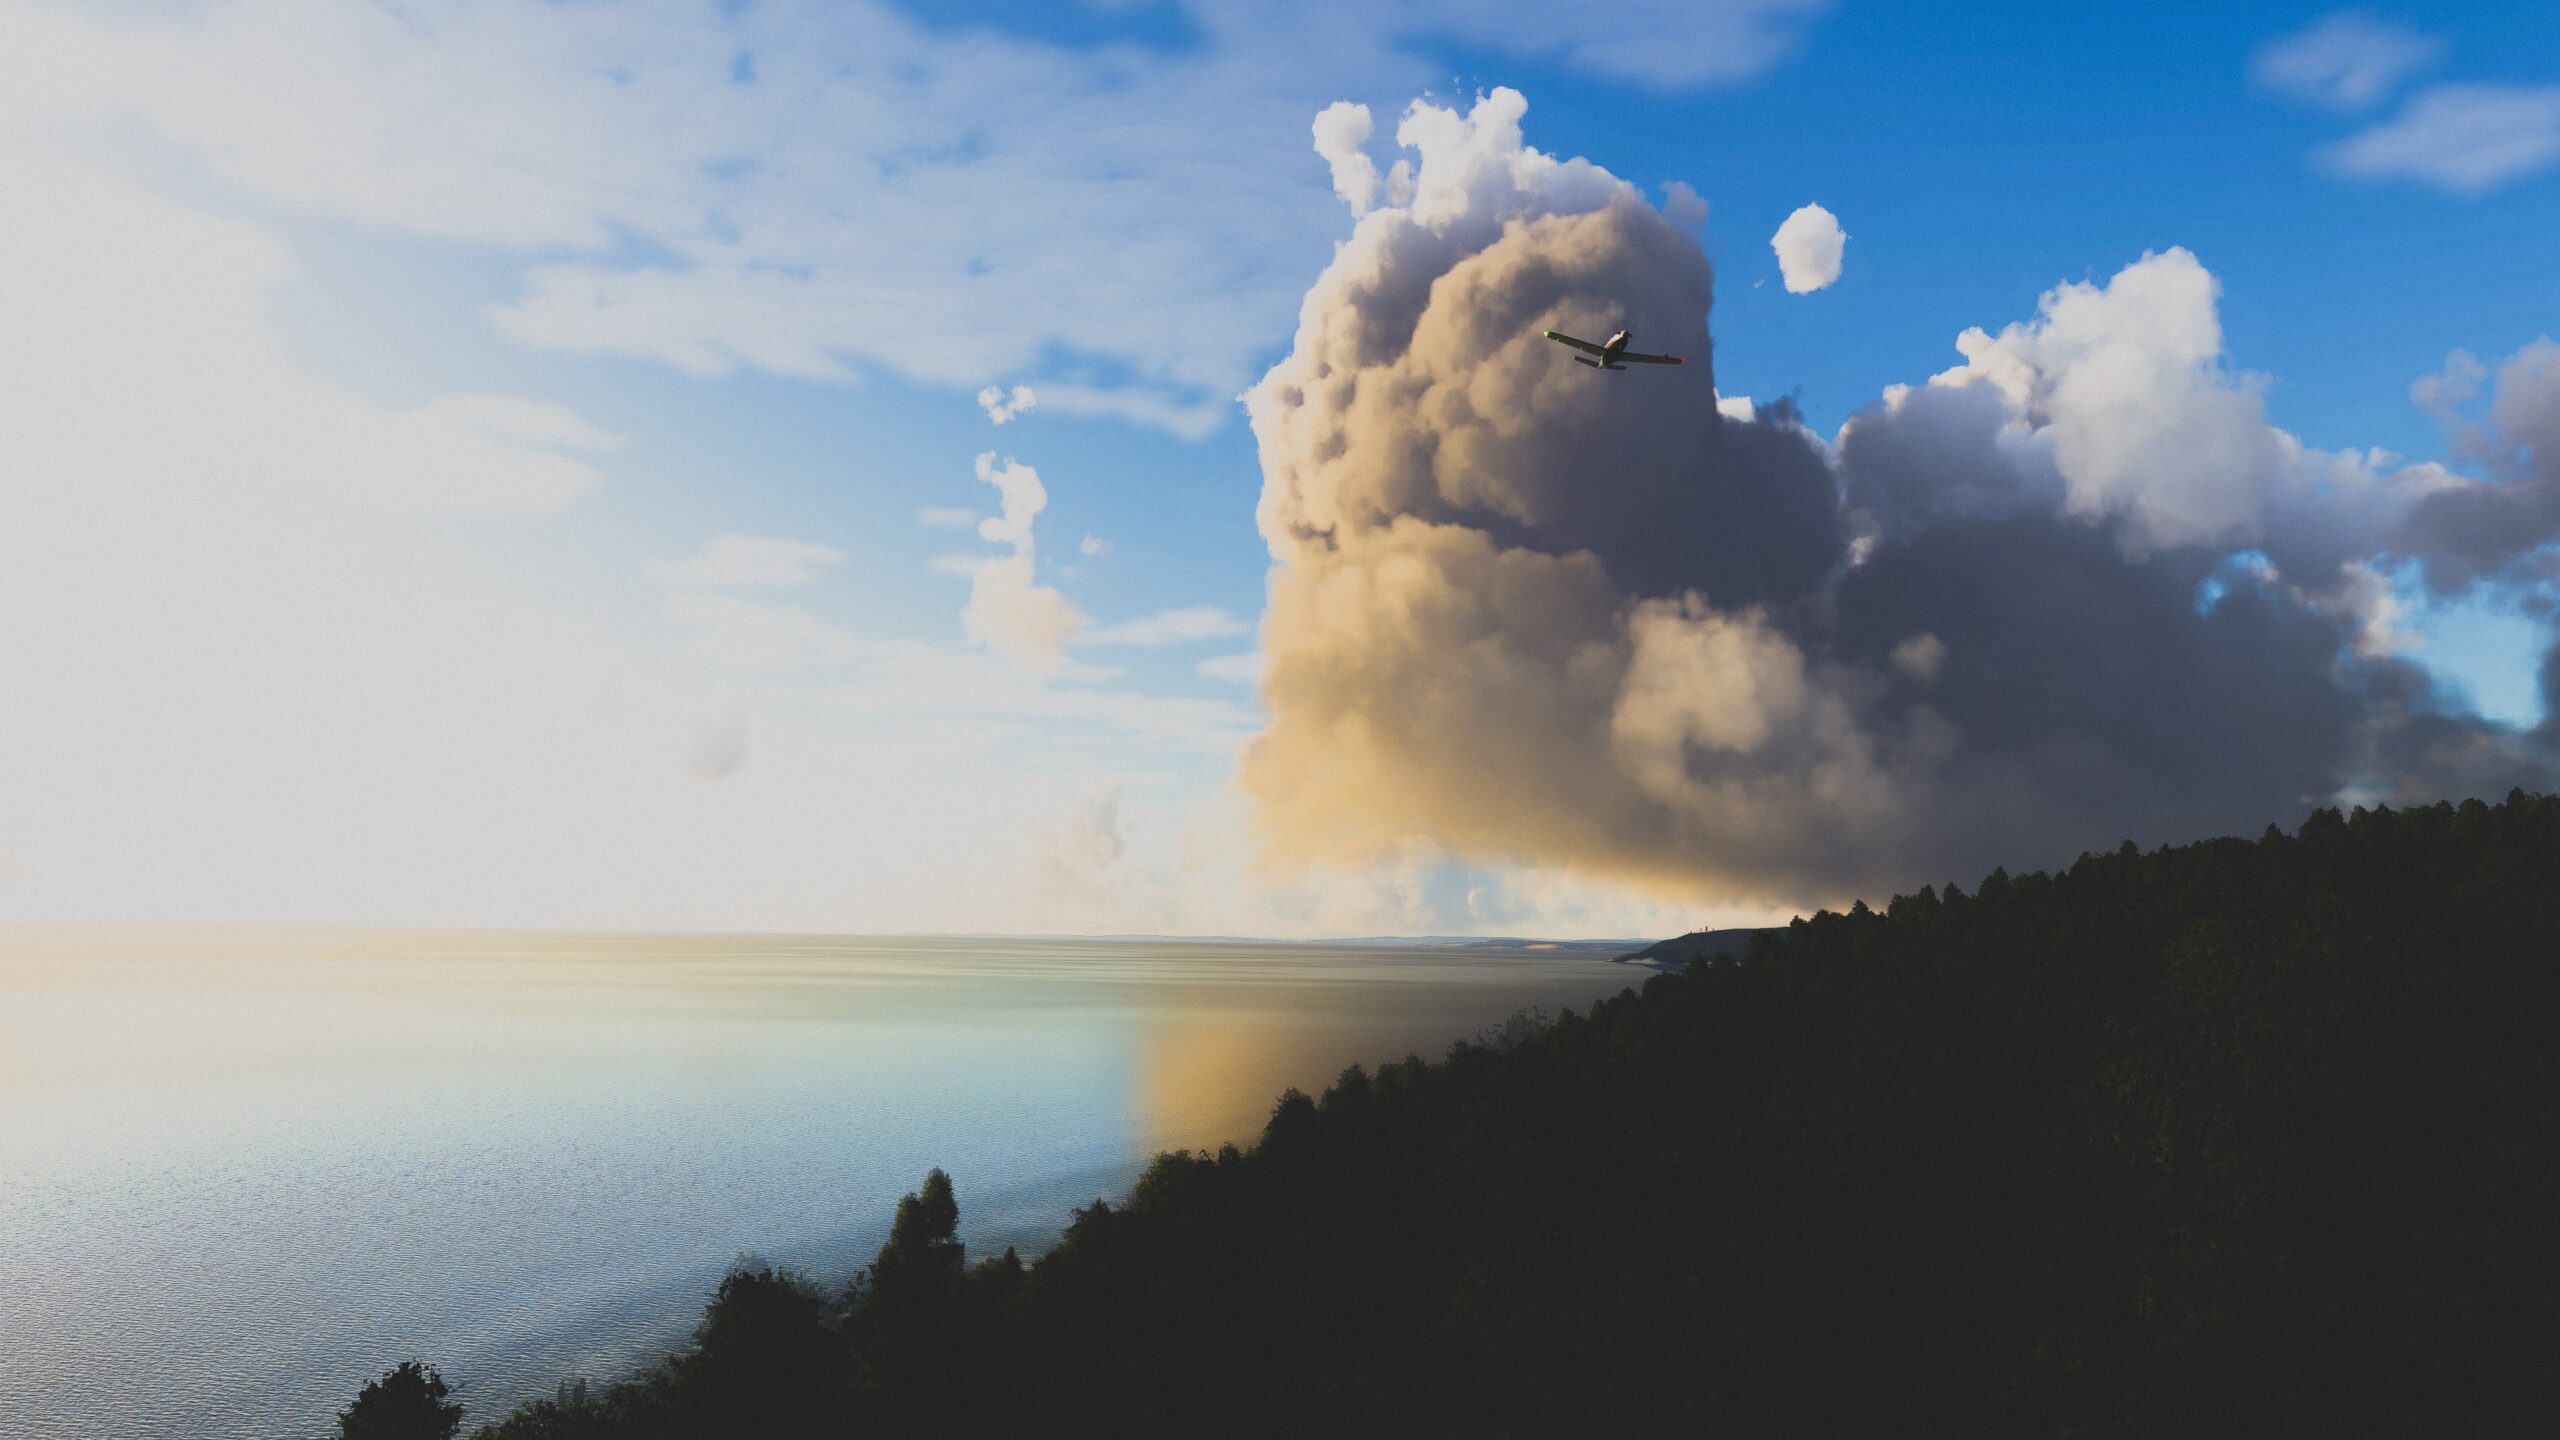 Microsoft Flight Simulator-Flugzeug fliegt vor einer riesigen Wolke zwischen Klippen und Bäumen